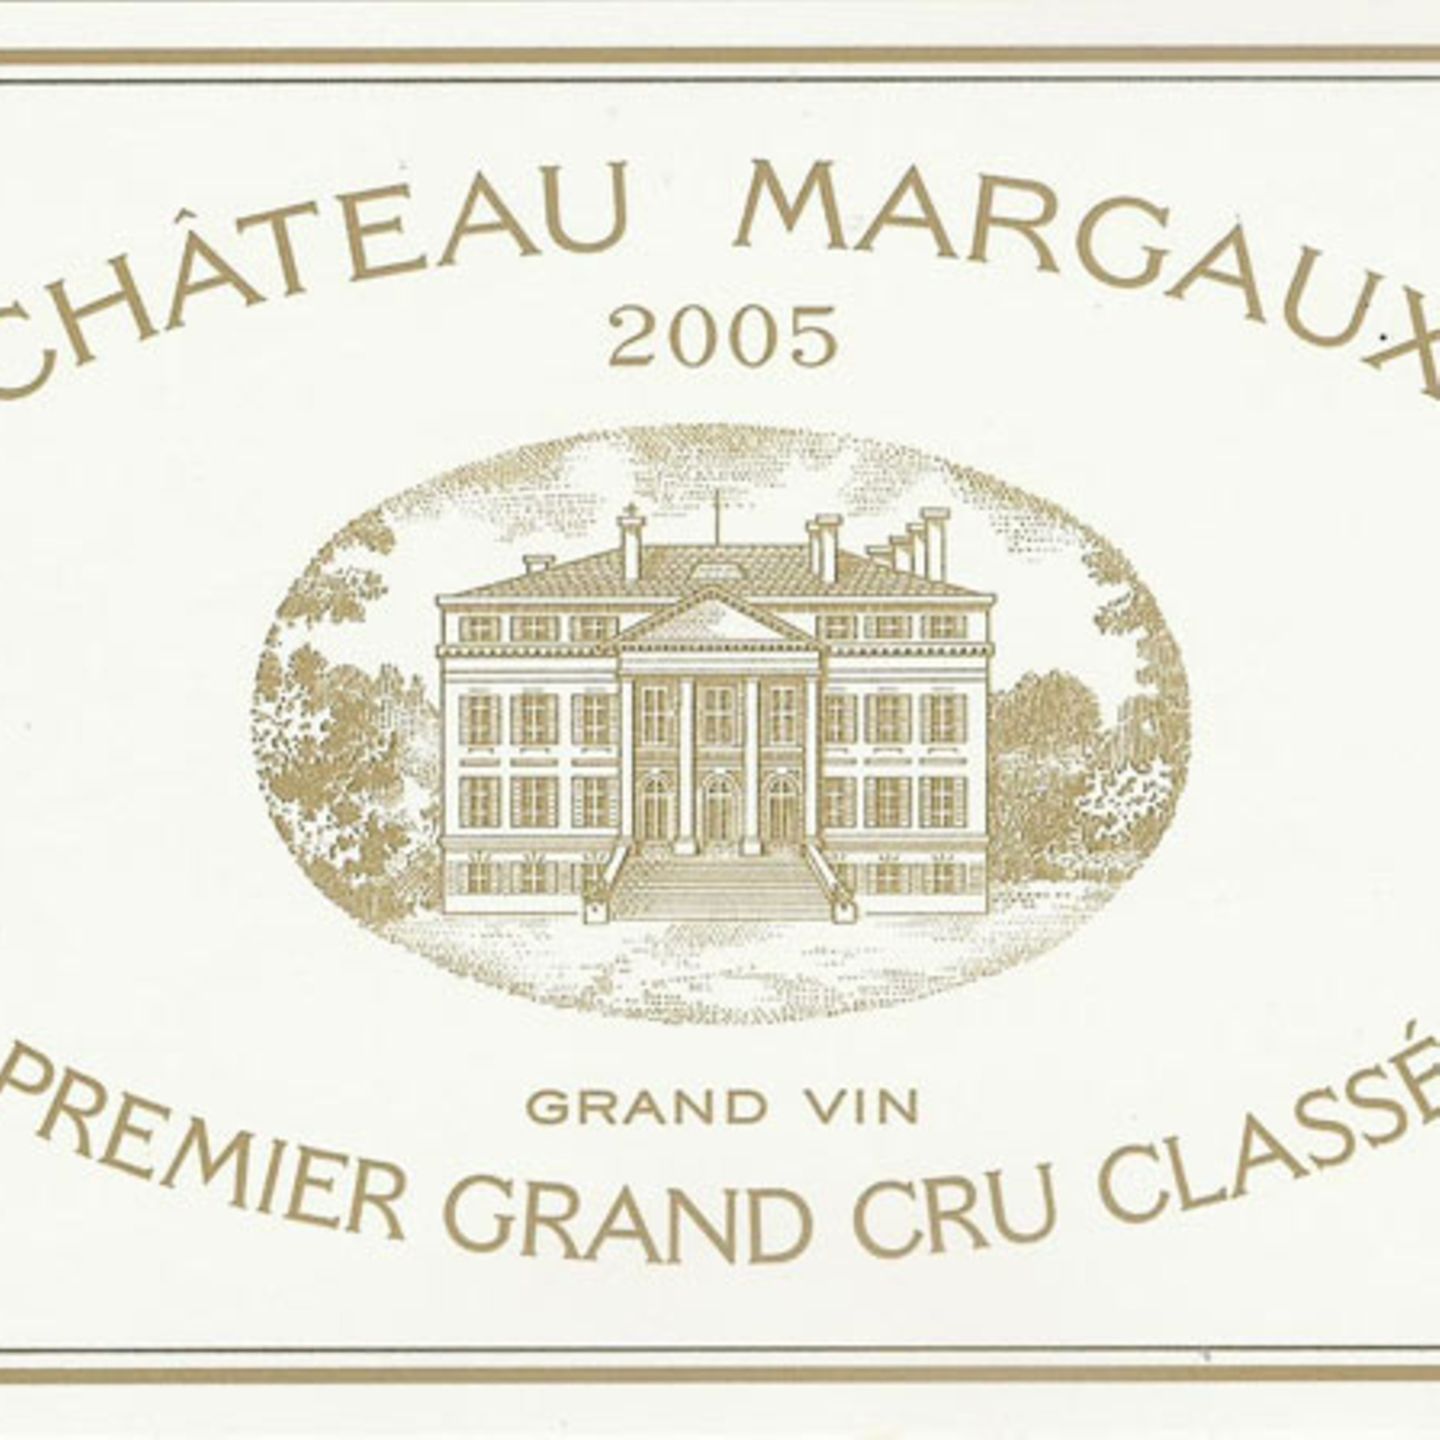 Château Margaux Premier Grand Cru Classé